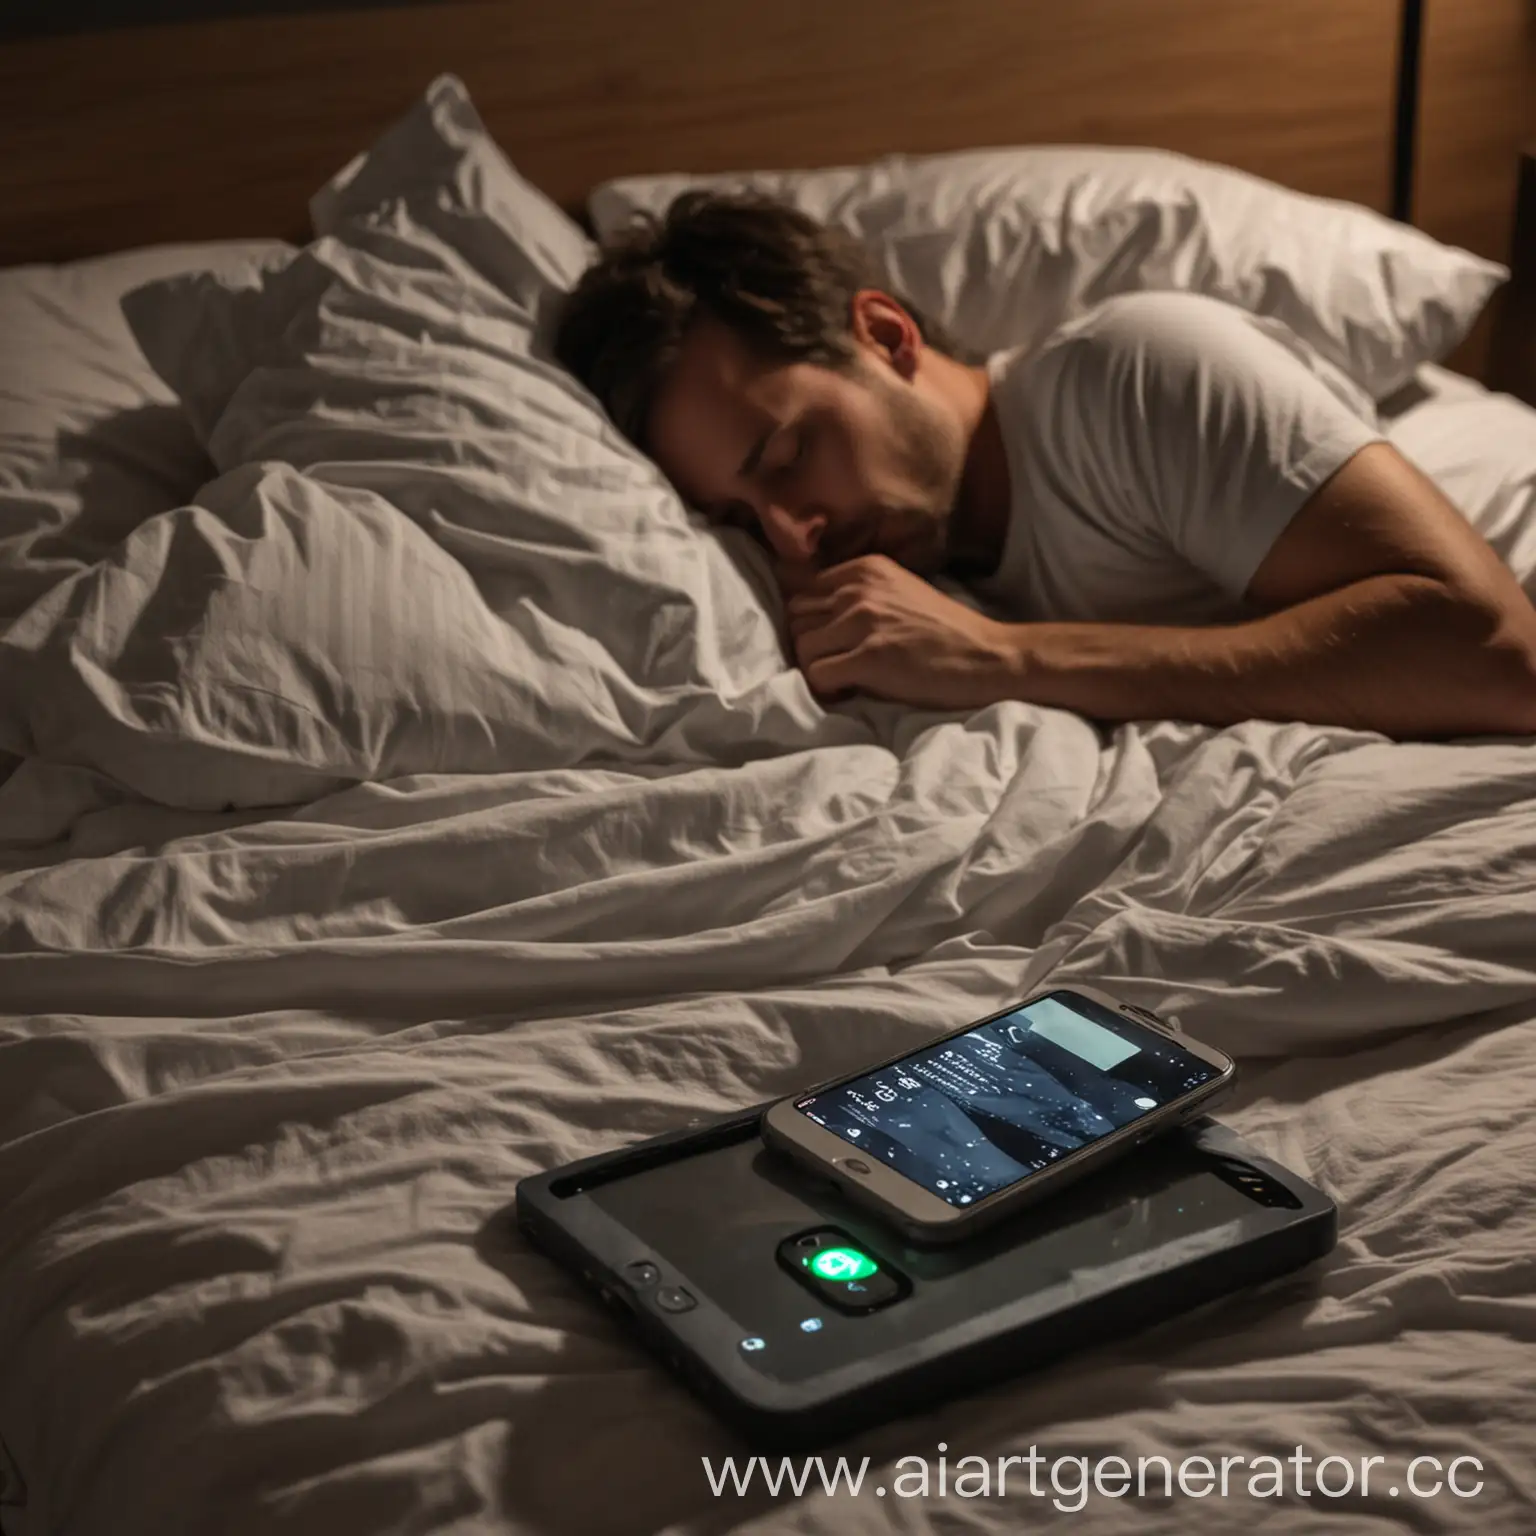 На переднем плане телефон с включенным экраном лежит на тумбочке. На втором плане мужчина спит в кровати. На дворе ночь. Крупный план